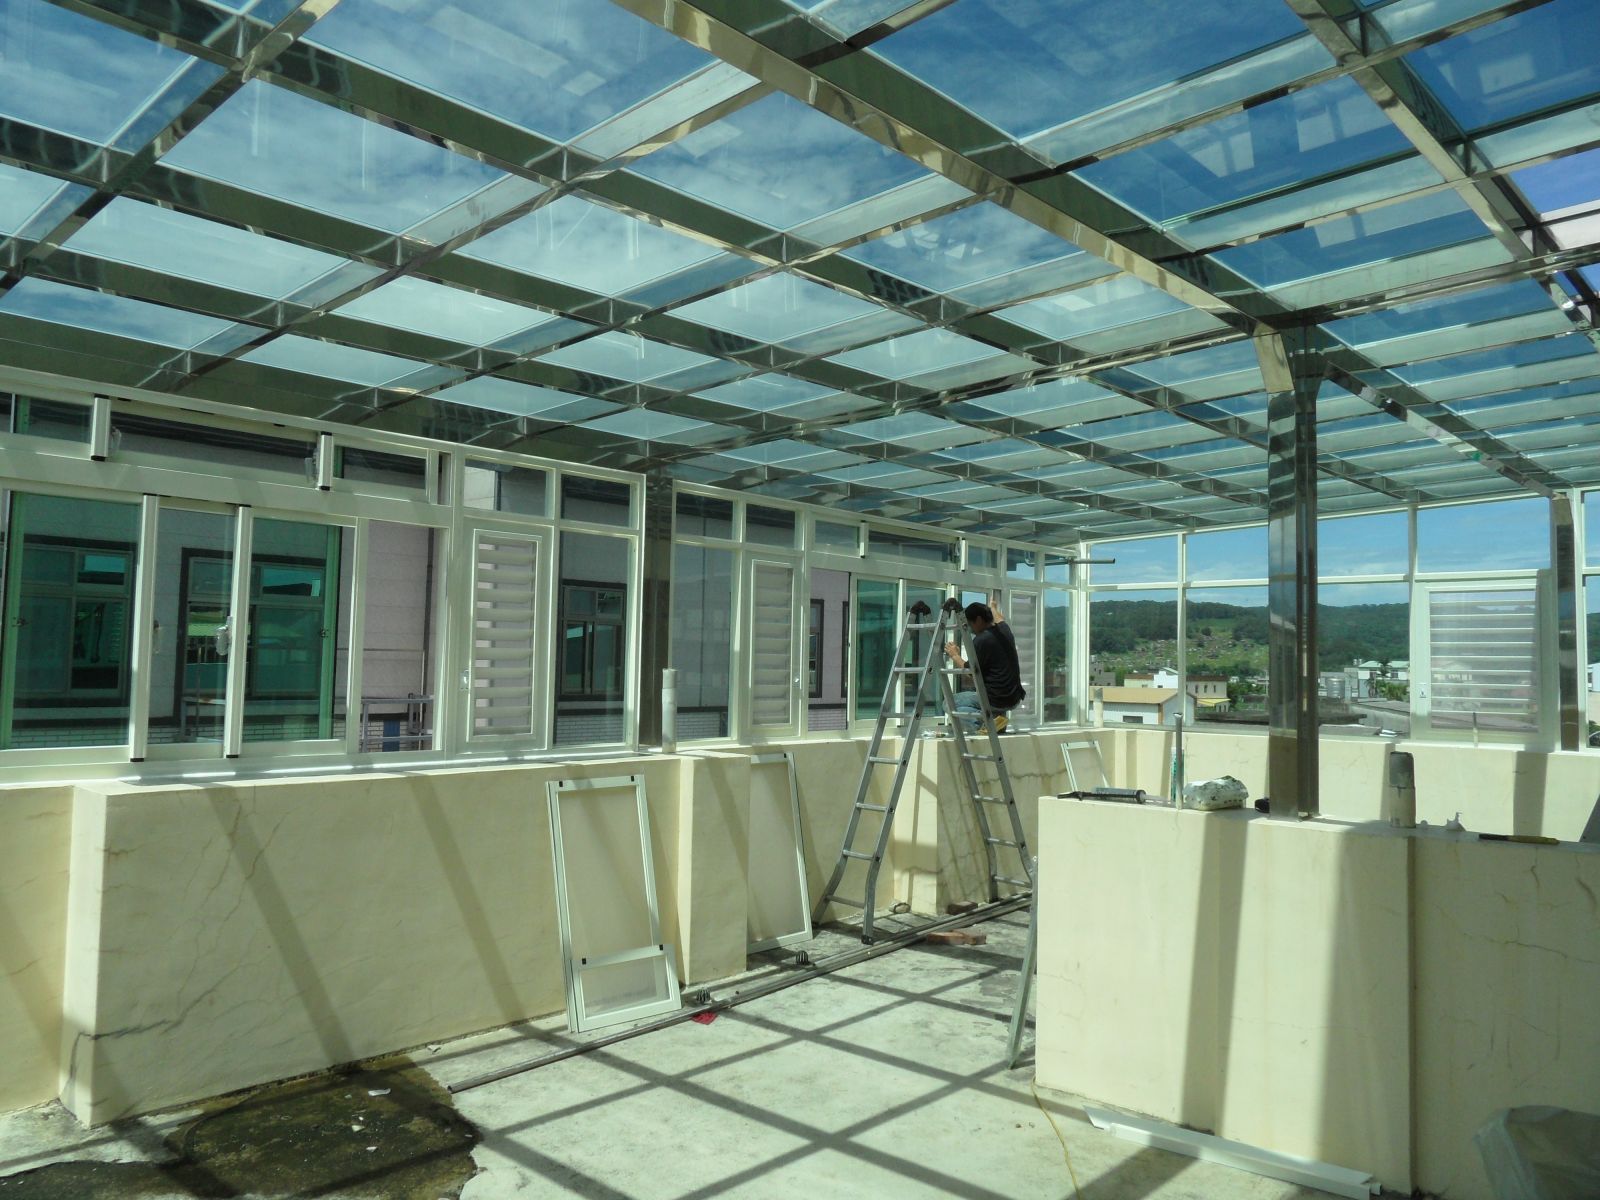 屋頂玻璃採用5+5綠色膠合玻璃,(還會搭配羅馬簾)